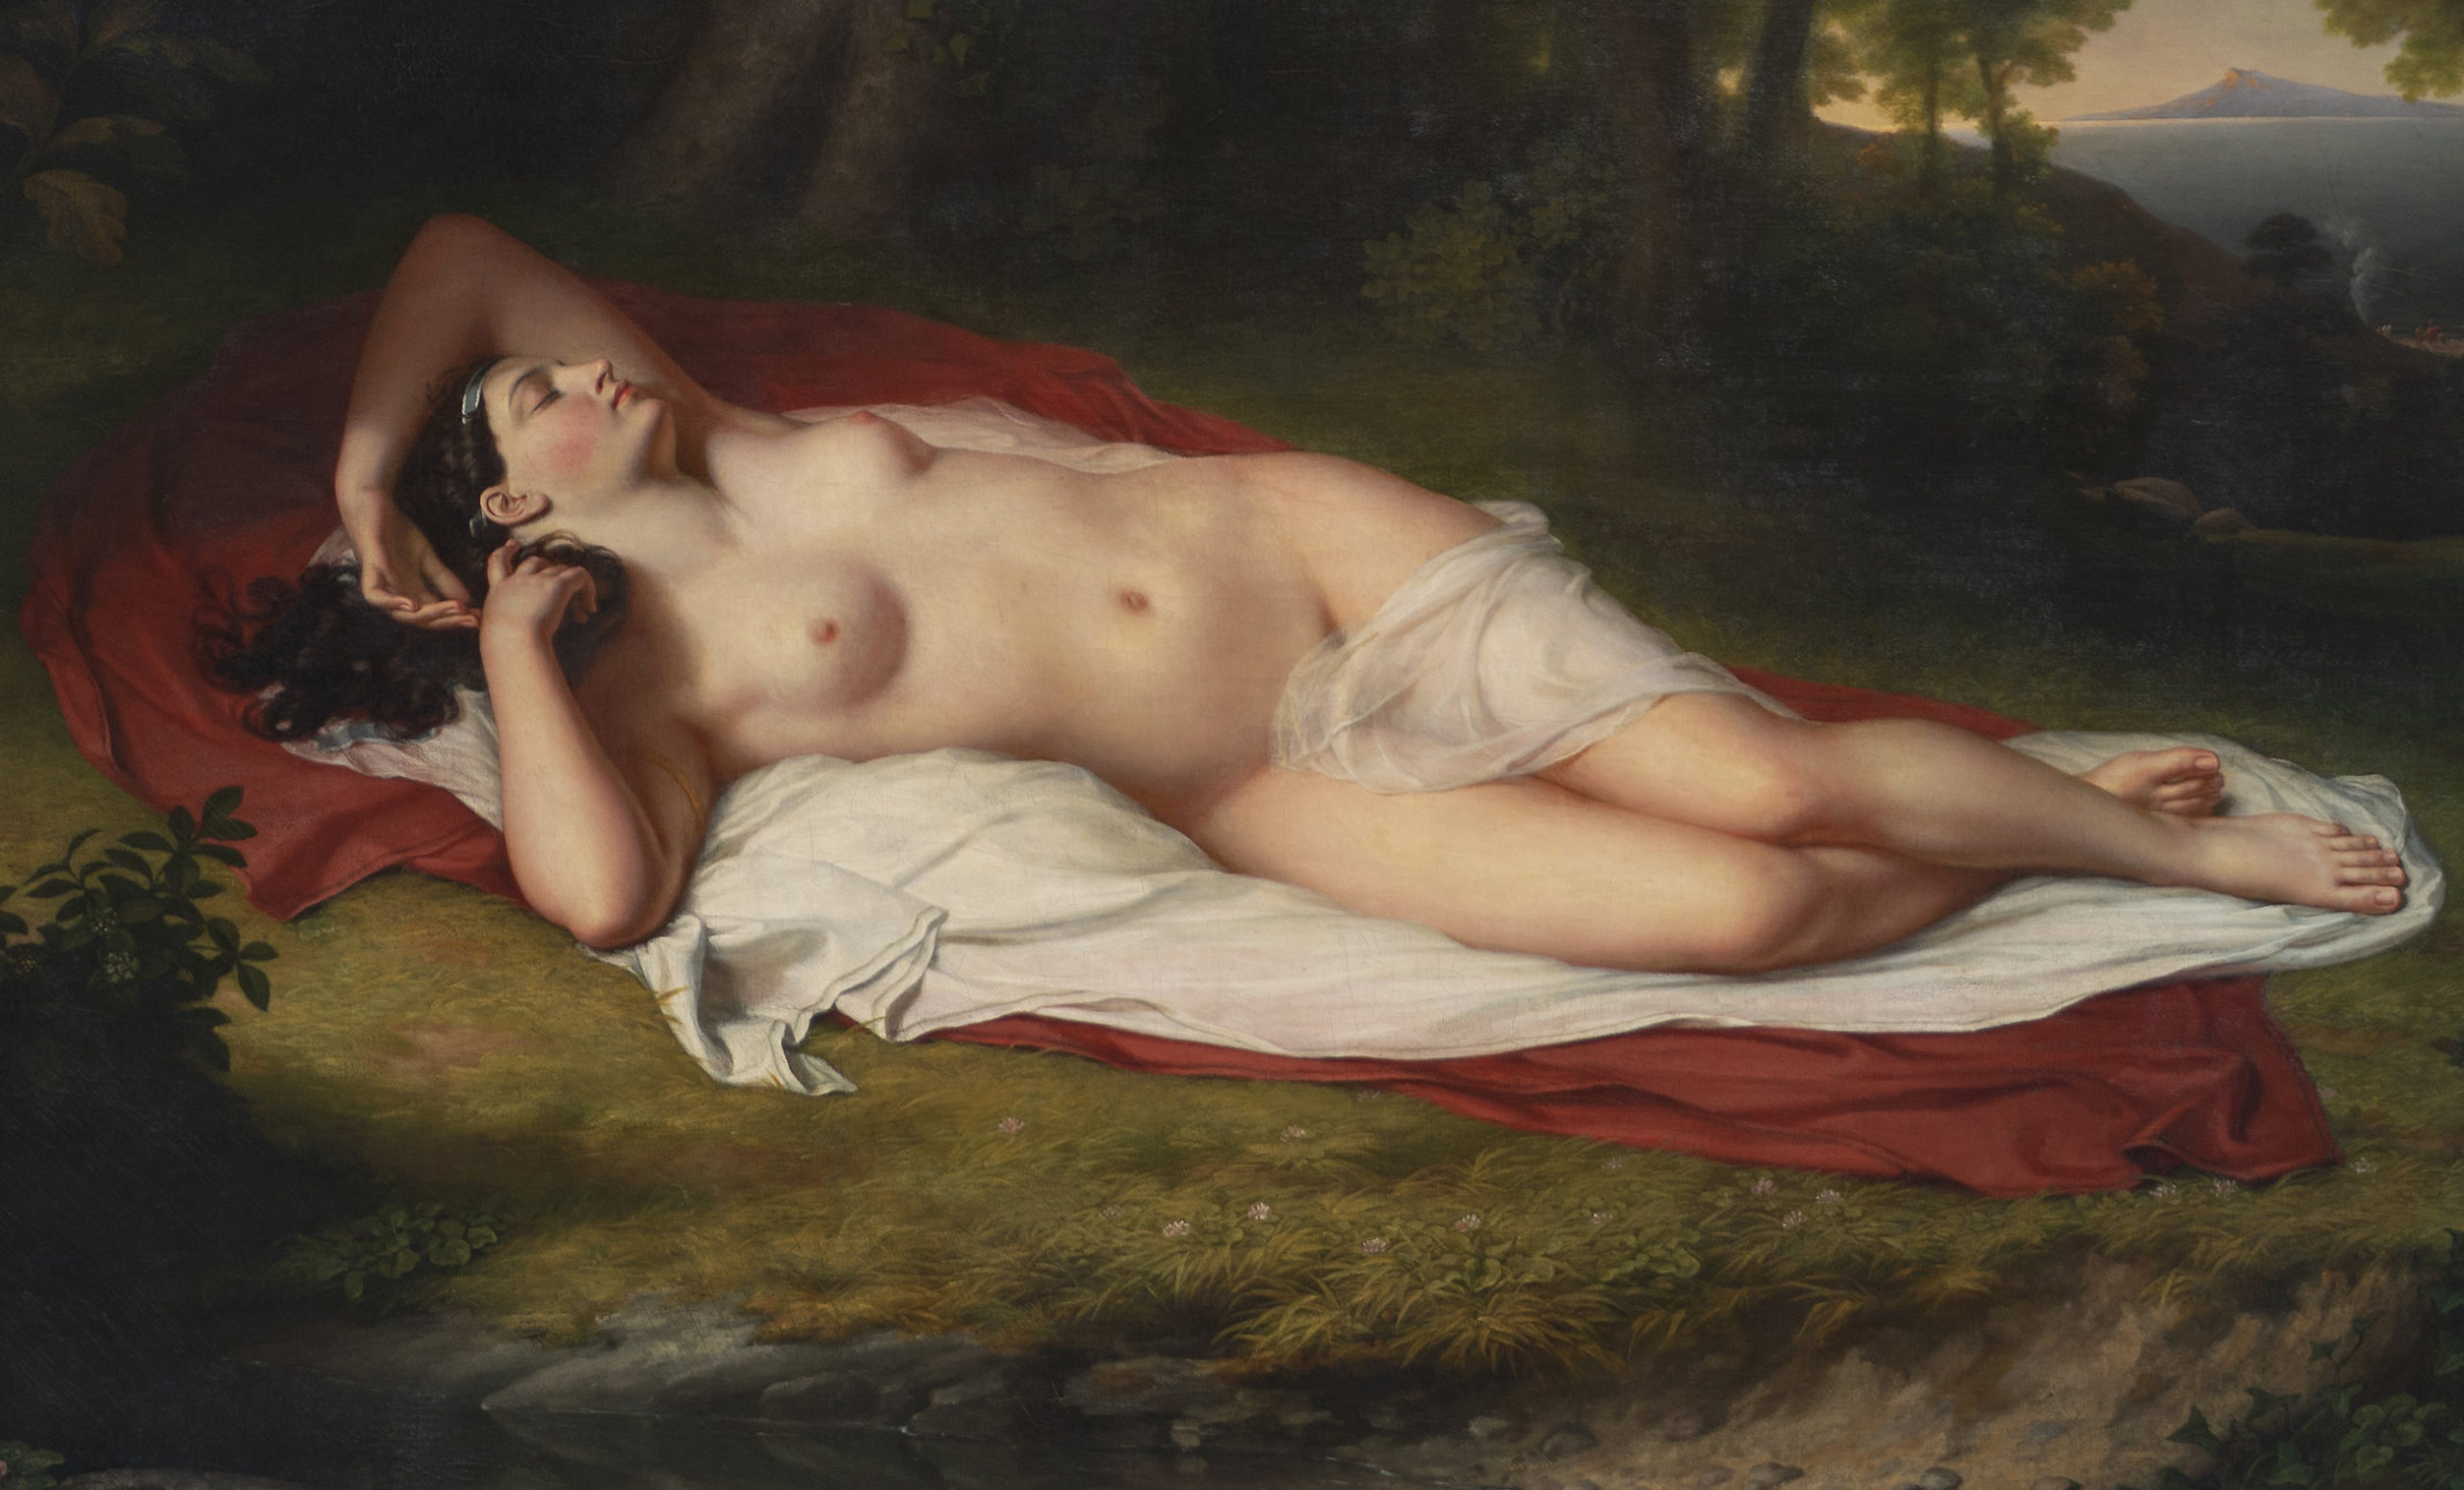 John Vanderlyn, Ariadne Asleep on the Island of Naxos (detail), 1809-14, oil on canvas, 174.0 x 221.0 cm (The Pennsylvania Academy of the Fine Arts)